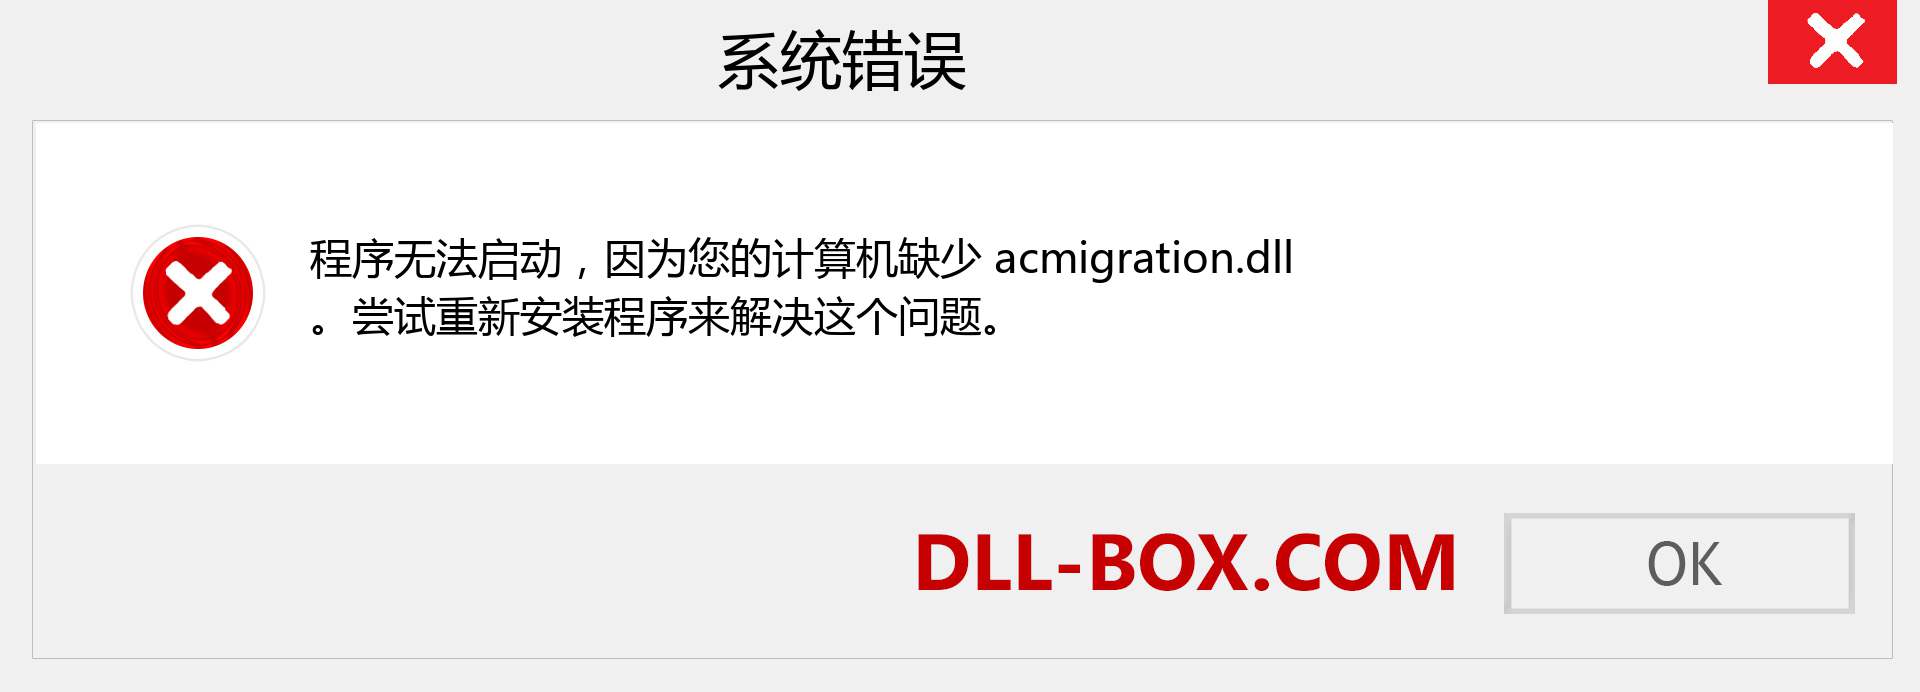 acmigration.dll 文件丢失？。 适用于 Windows 7、8、10 的下载 - 修复 Windows、照片、图像上的 acmigration dll 丢失错误